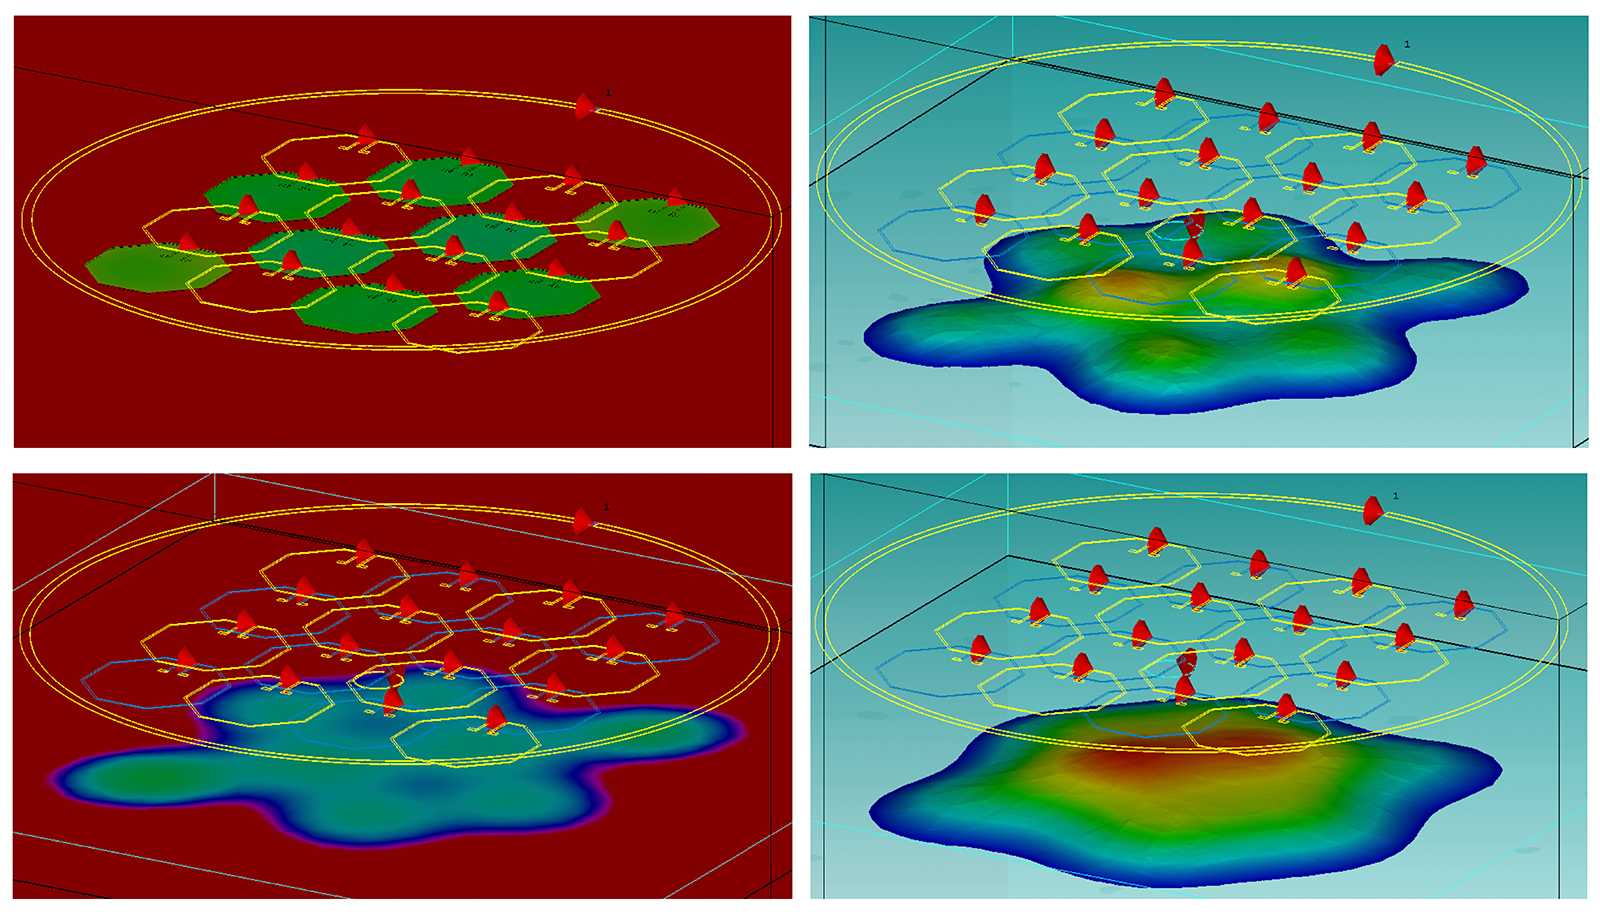 Phasenbilder in zwei verschiedenen Tiefen (links) und Magnitudenbilder des Magnetfeldes (rechts) für unterschiedliche resonante Muster in einem Metamaterial-Array.